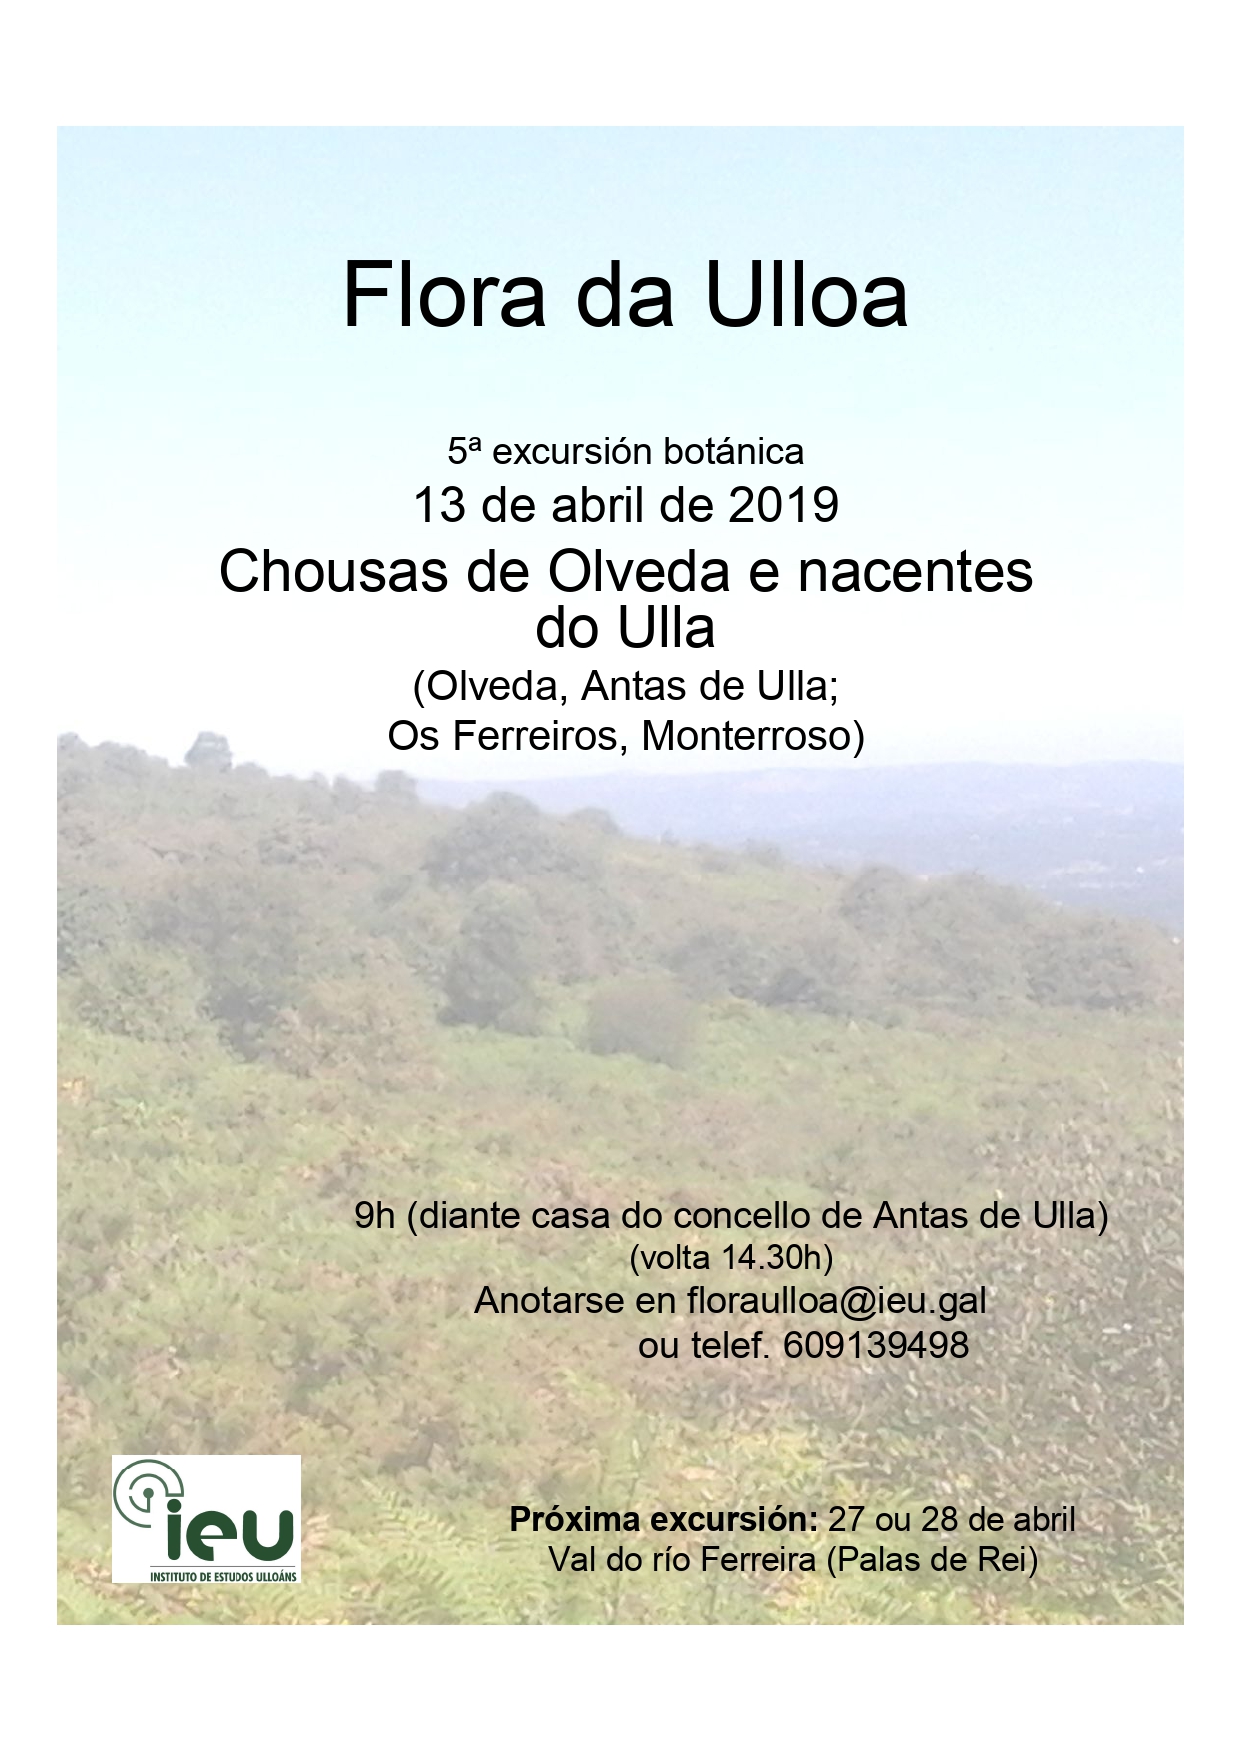 5ªexcursión Flora da Ulloa a Olveda, Instituto de Estudos Ulloáns